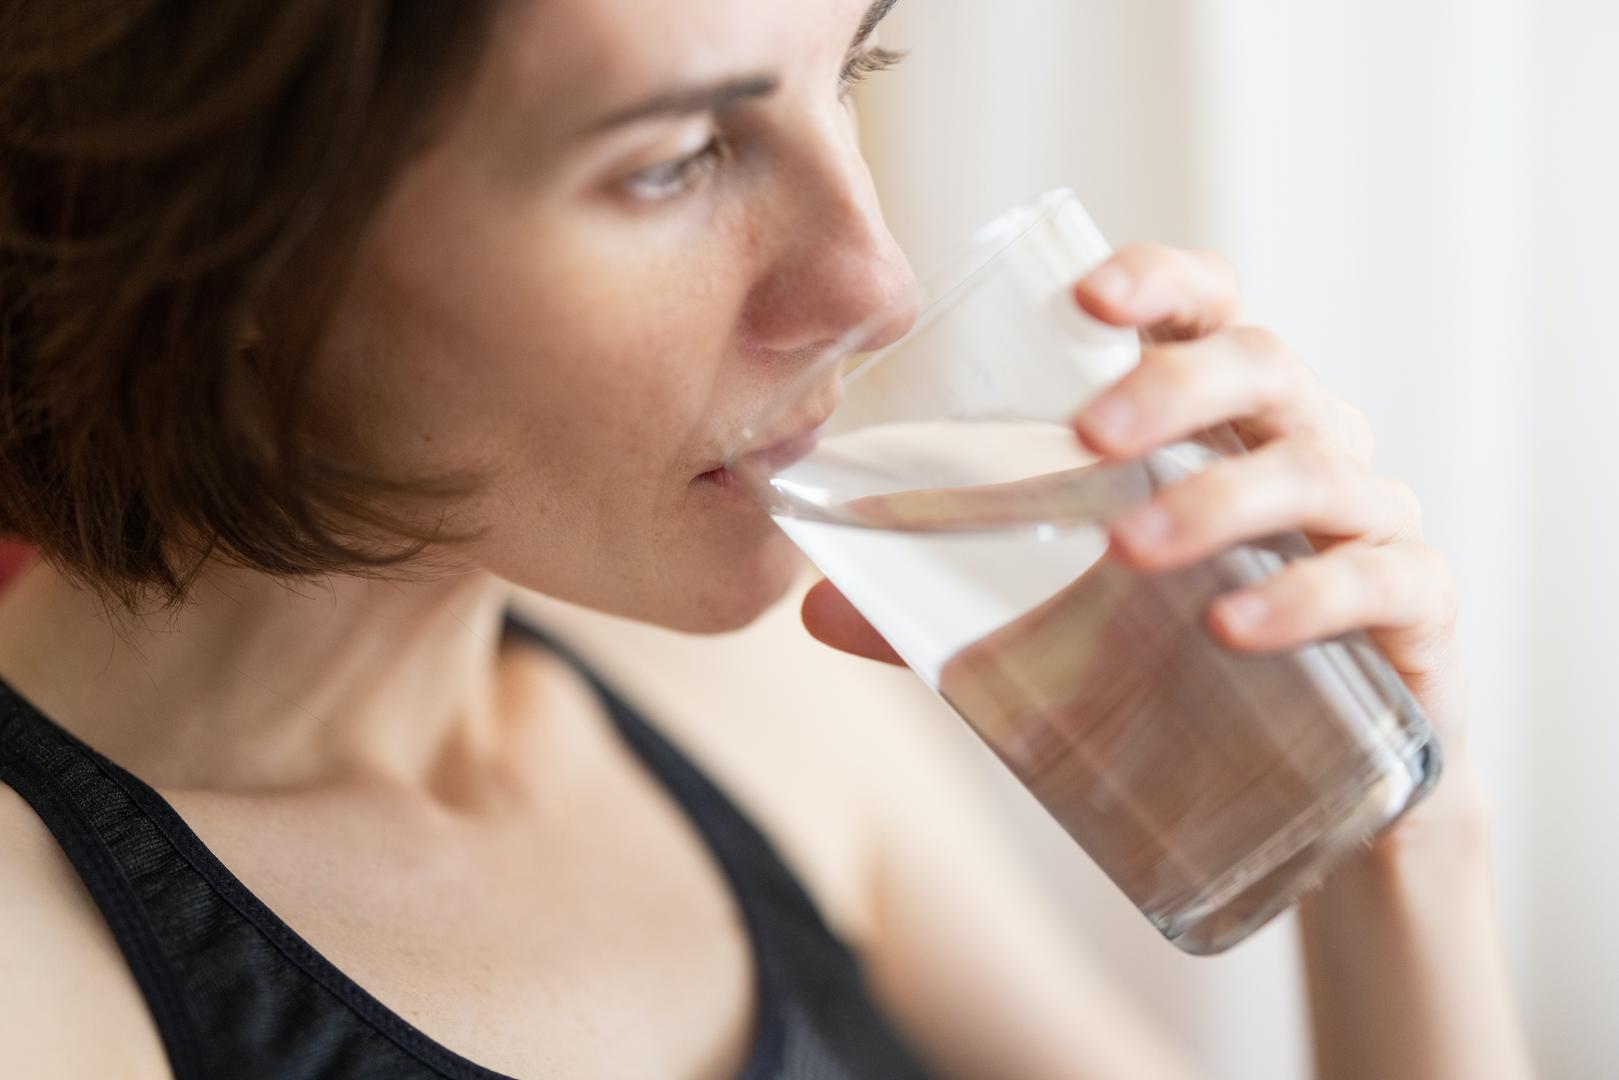 Pijte tekućine-
Voda prirodno ubrzava metabolizam pa tako, ako četiri puta dnevno popijete veliku čašu vode, ona će izbrisati oko sto kalorija. Još je korisnije ako je hladna voda – vaše tijelo mora raditi kako bi tu tekućinu dovelo do temperature tijela – metabolizam brže radi. Također, čaša vode prije jela napunit će vam želudac pa ćete samim time manje pojesti tijekom obroka.